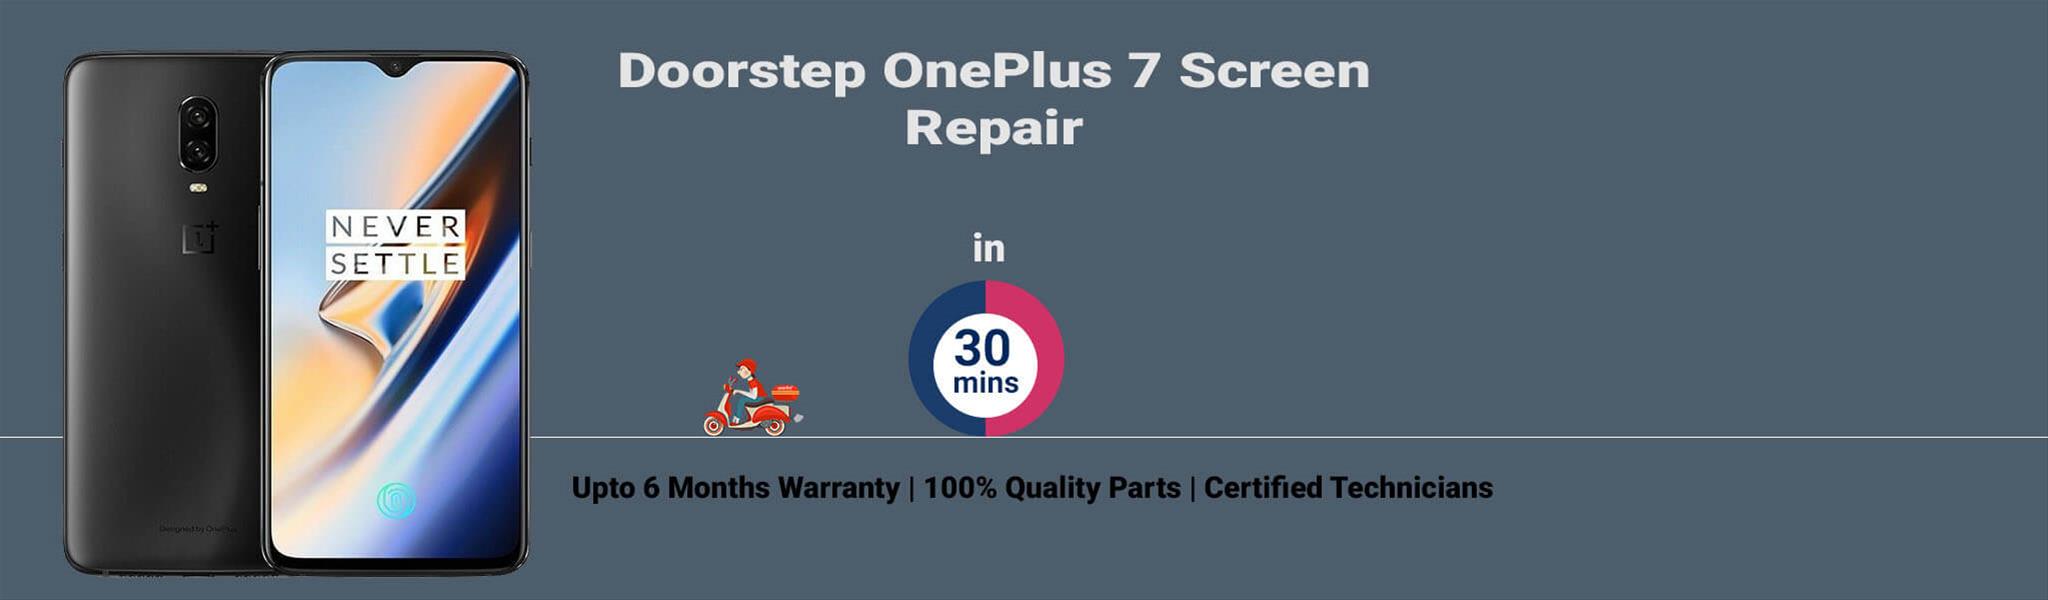 oneplus-7-screen-repair.jpg